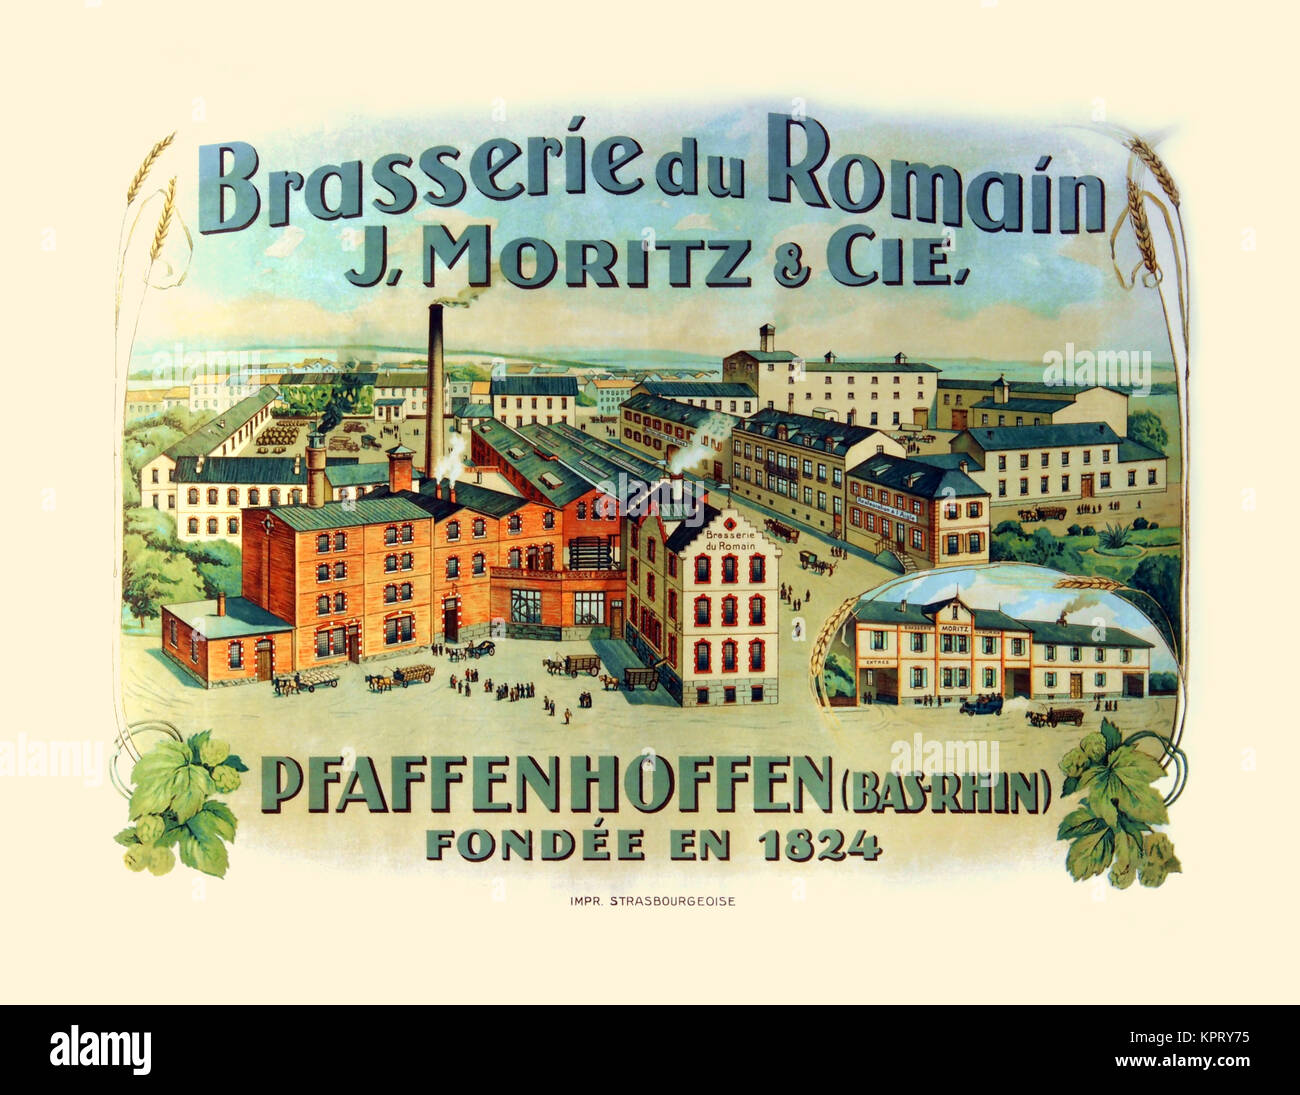 La Brasserie du Romain J. moritz & Cie. Foto Stock